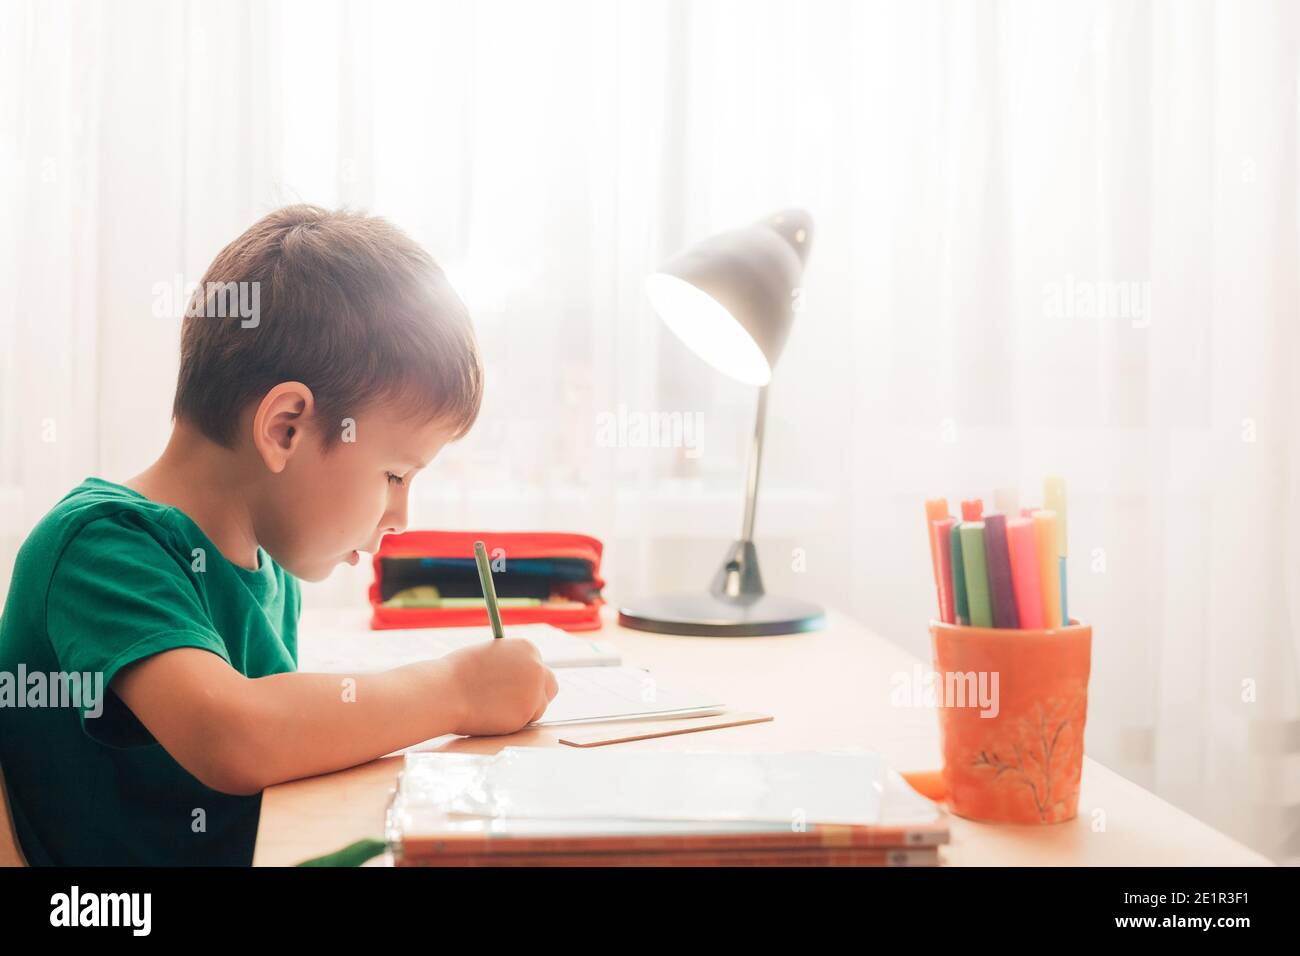 Niedlich 7 Jahre alt Kind Junge tun seine Wittling Hausaufgaben in Notebook sitzen am Schreibtisch. Seitenansicht Stockfoto